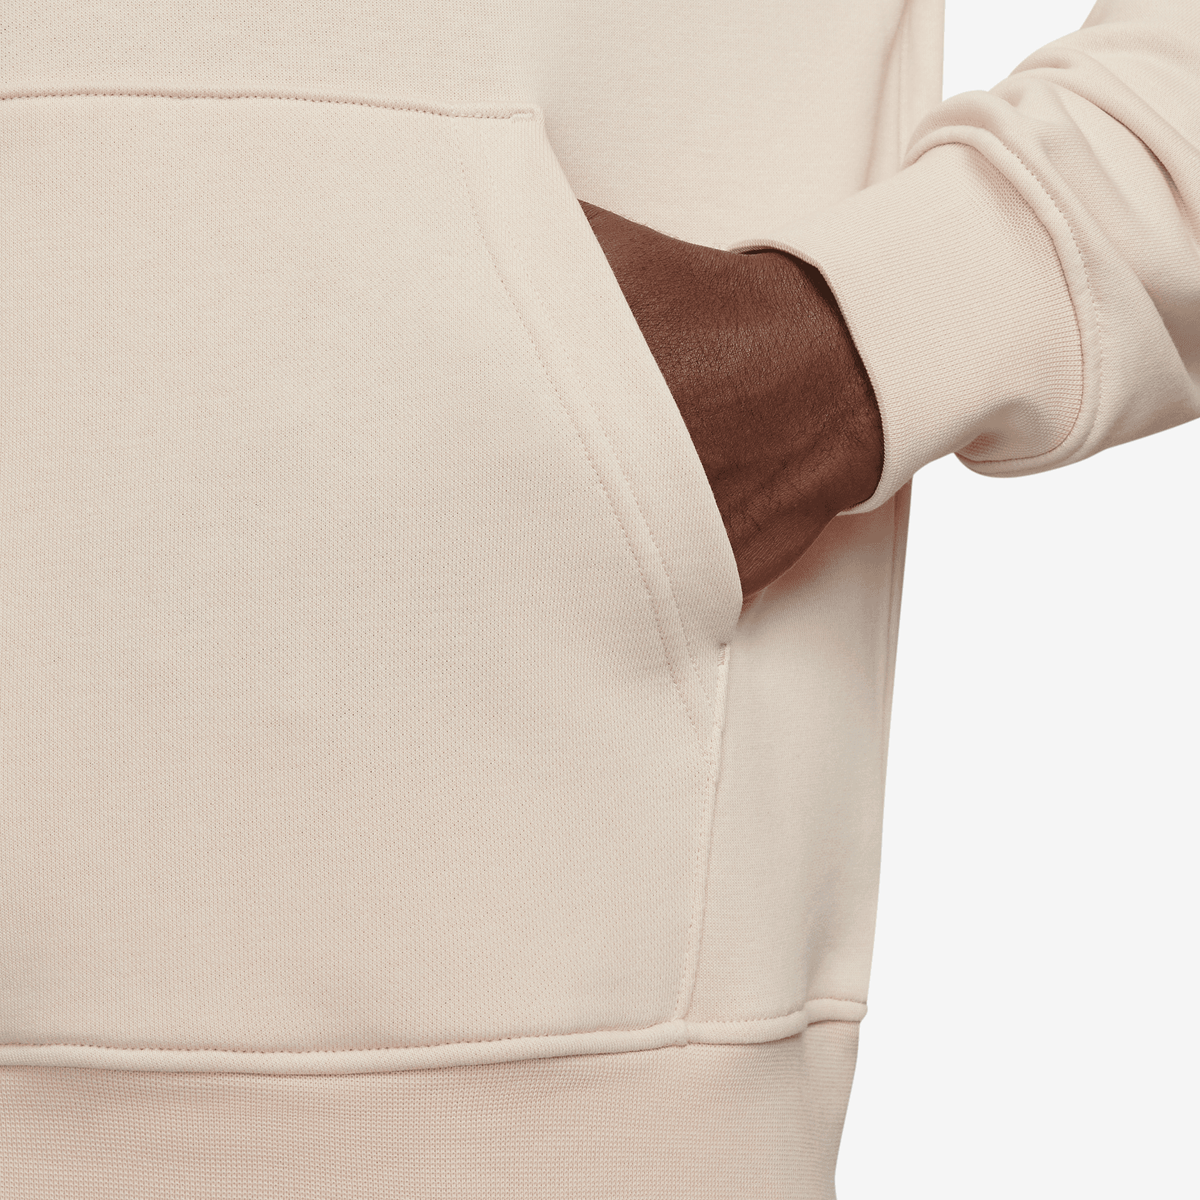 Jordan Essentials Loopback-fleece-hoodie Hoodies Heren legend lt brown white maat: S beschikbare maaten:S M L XL